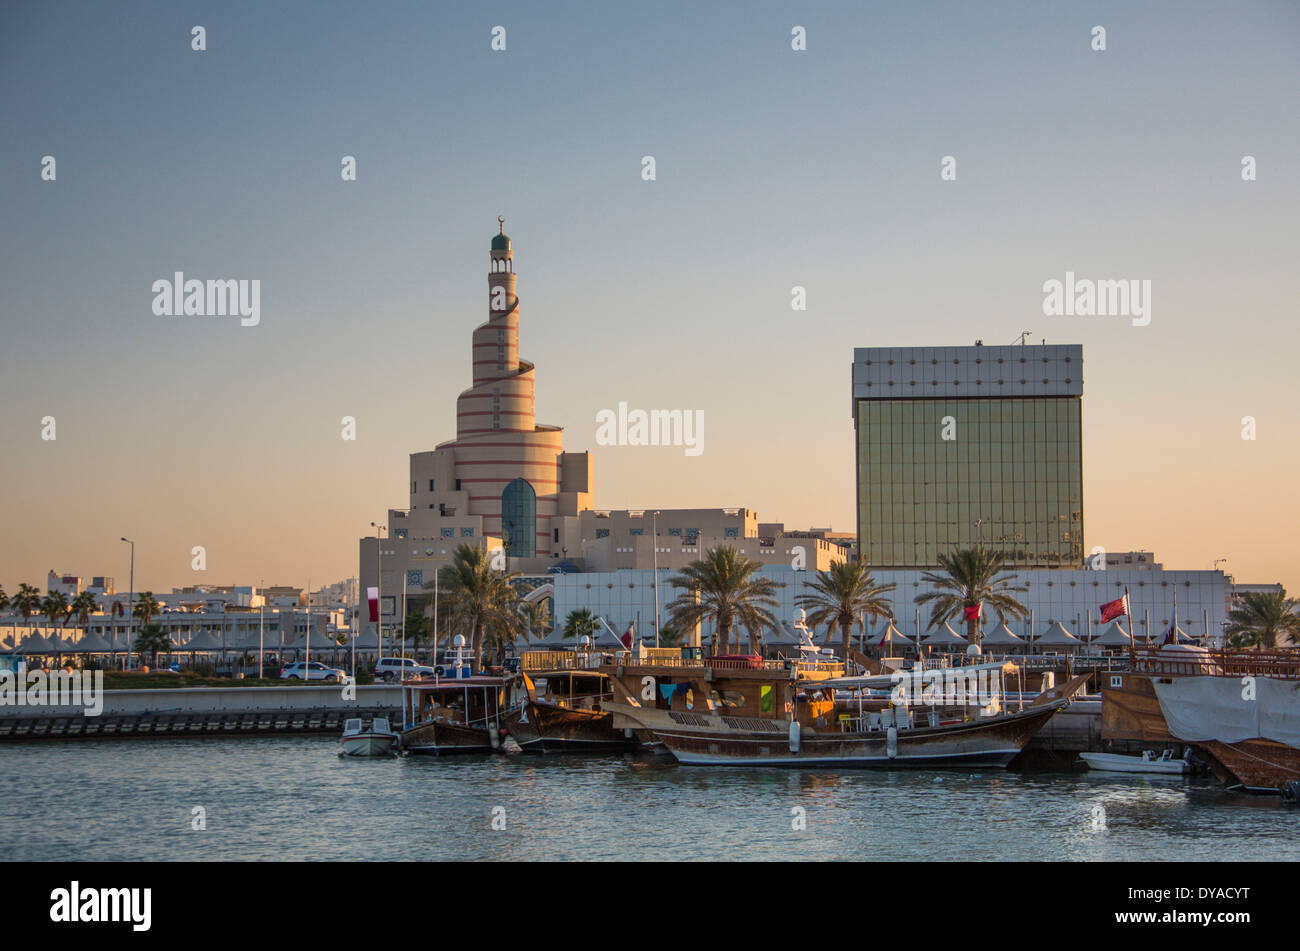 Doha in Qatar Medio Oriente barche architettura centro città porto marina islamica moschea minareto vecchio porto turistico di simbolo towe Foto Stock